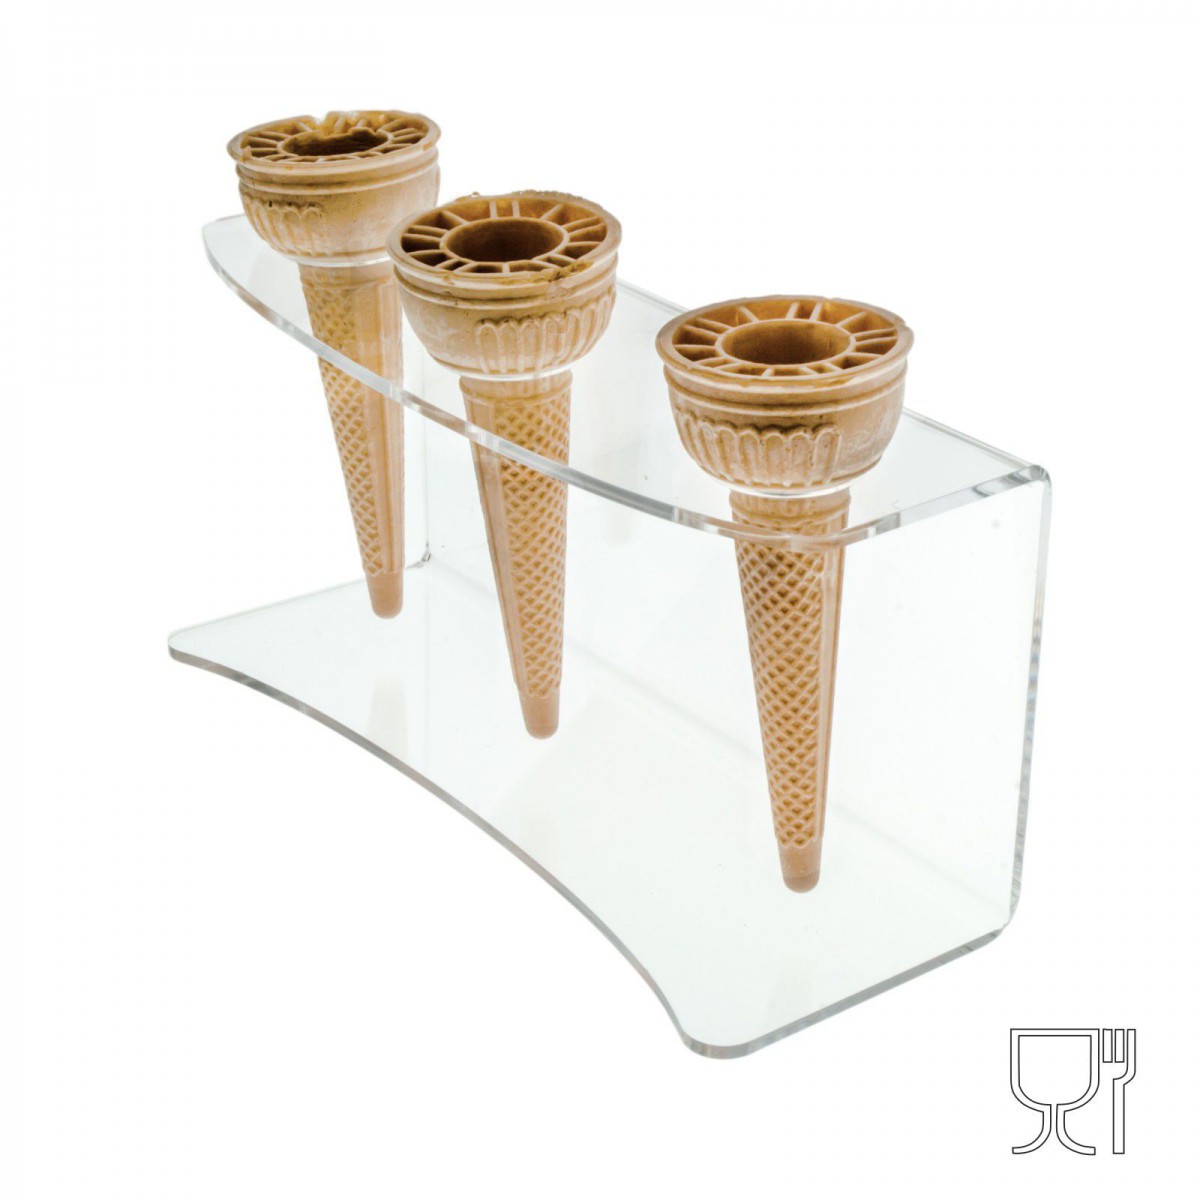 Expositor de mostrador para conos de helado en plexiglás transparente